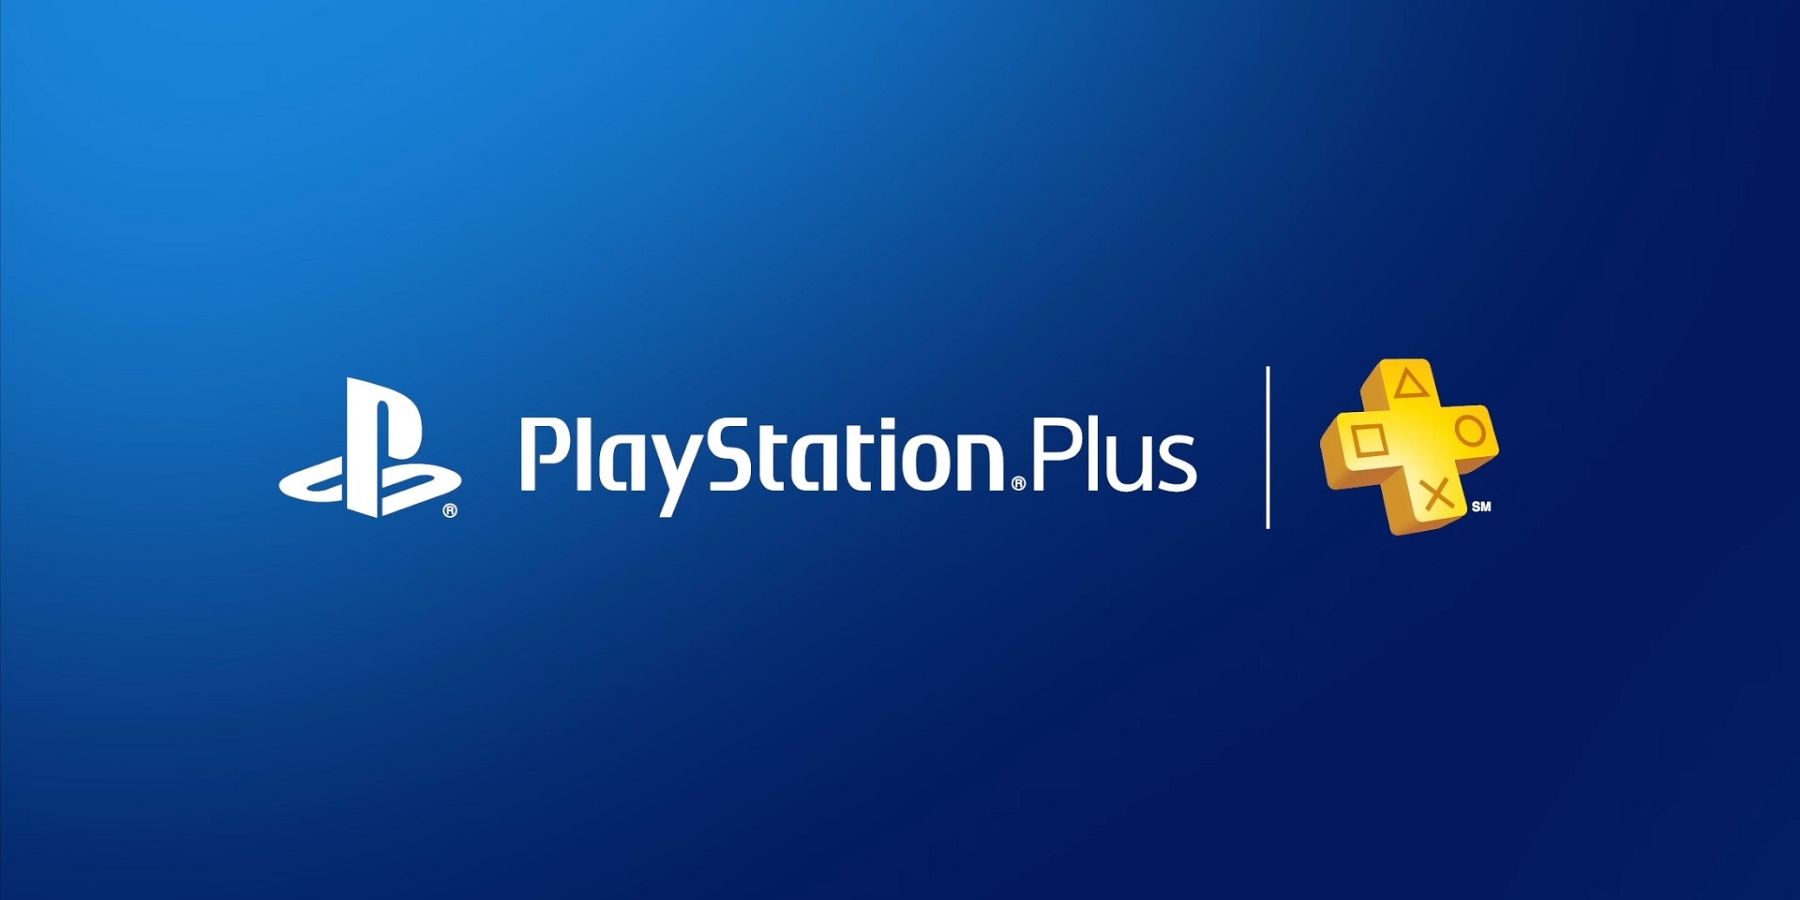 Il gioco gratuito PlayStation Plus ottiene l'aggiornamento per PS5